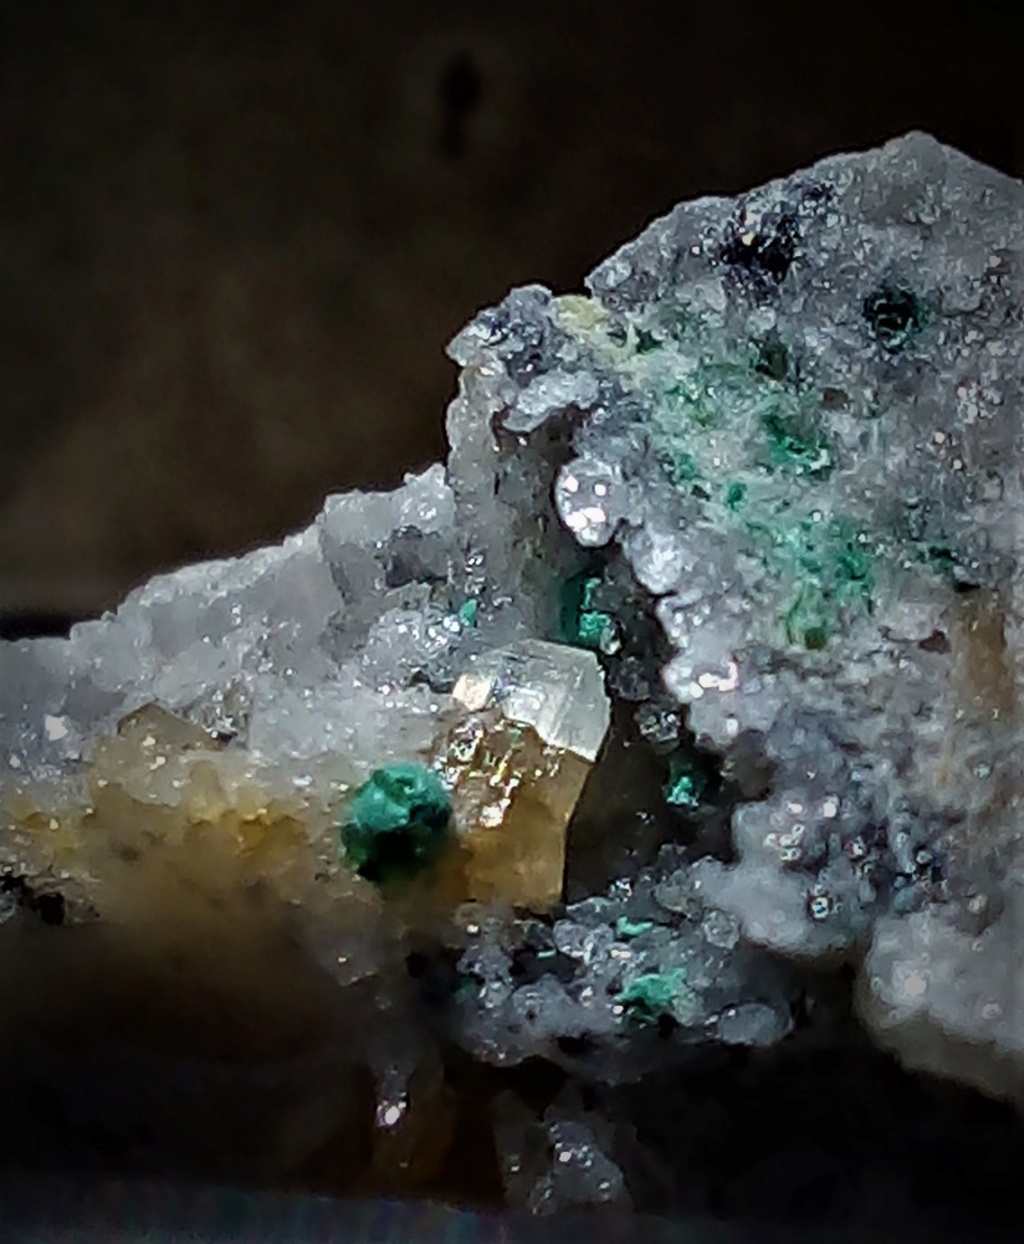 Minéraux de la mine CLARA autres que la Fluorite et la barite - Page 3 Img_2380